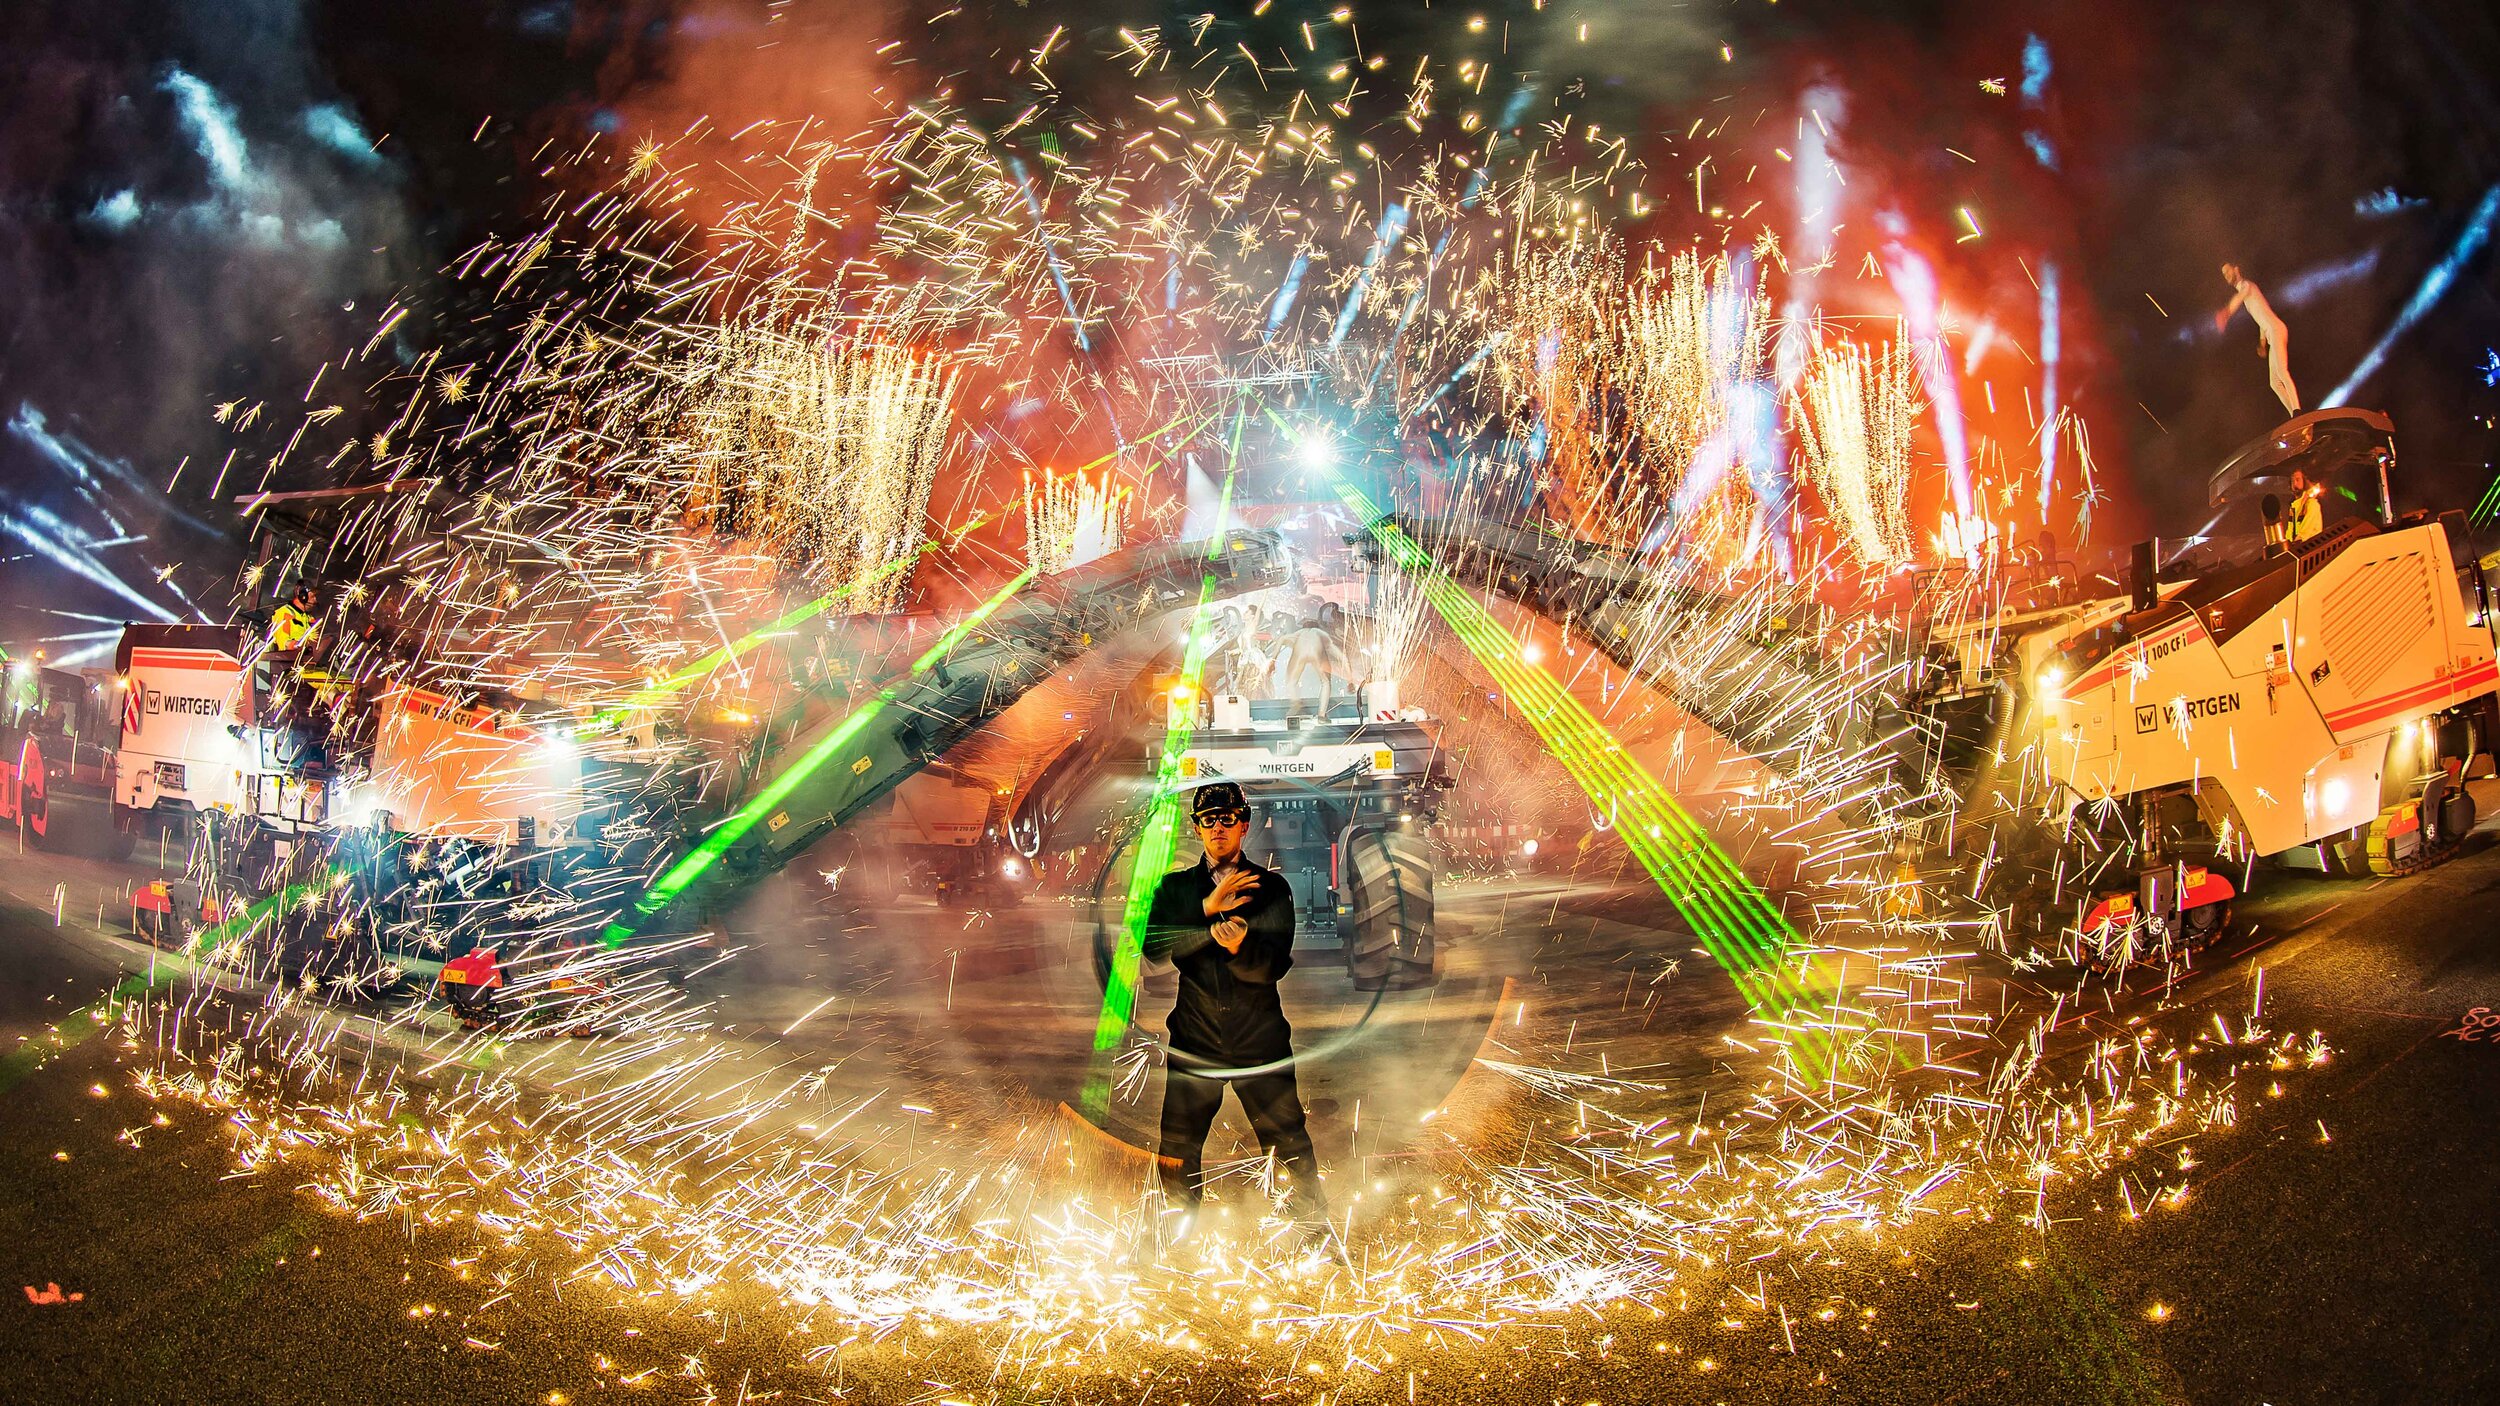 Höhepunkt der Parade - Pyro Xcess, Pyrotechnik Effekt der alles in Funken hüllt, unterstützt von Feuerwerken im Hintergrund und Laser, Produkteinführung, Wirtgen, Deutschland